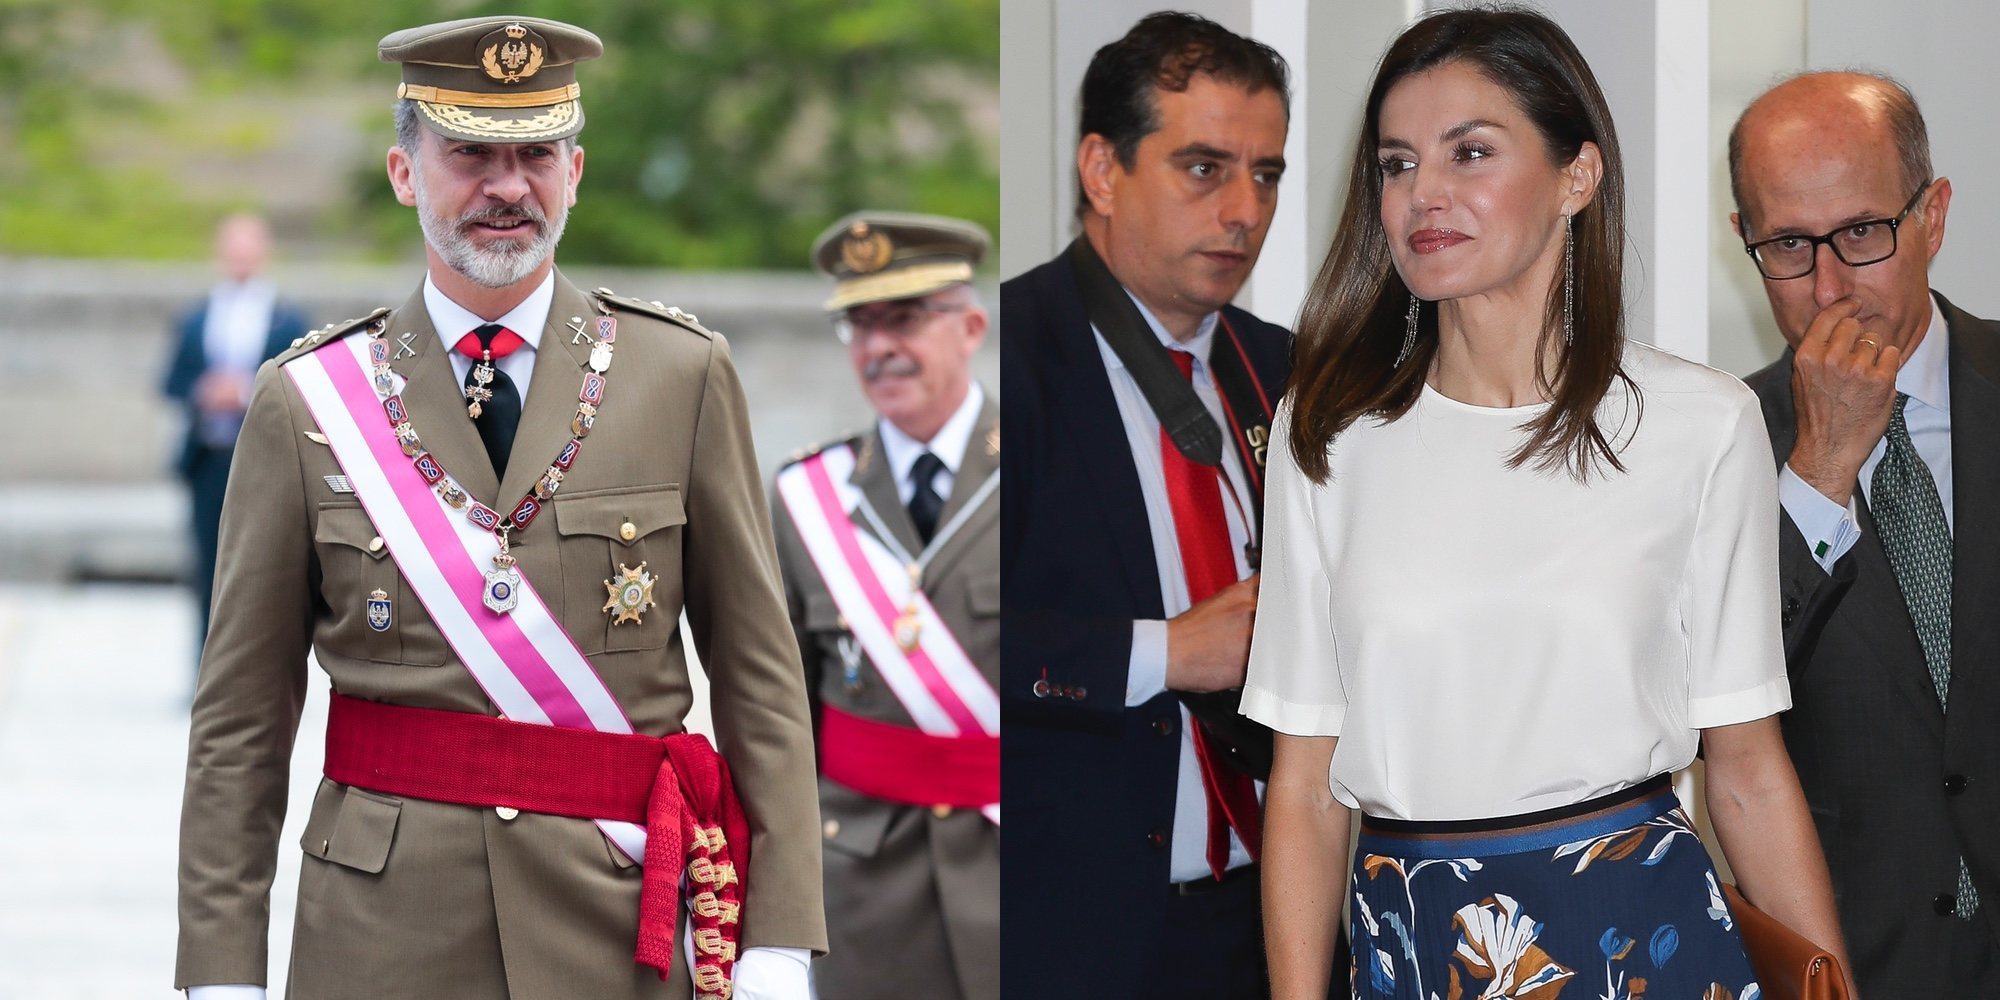 Los Reyes Felipe y Letizia, sonrisas y buen humor tras saberse el fallo del Supremo respecto a Urdangarin